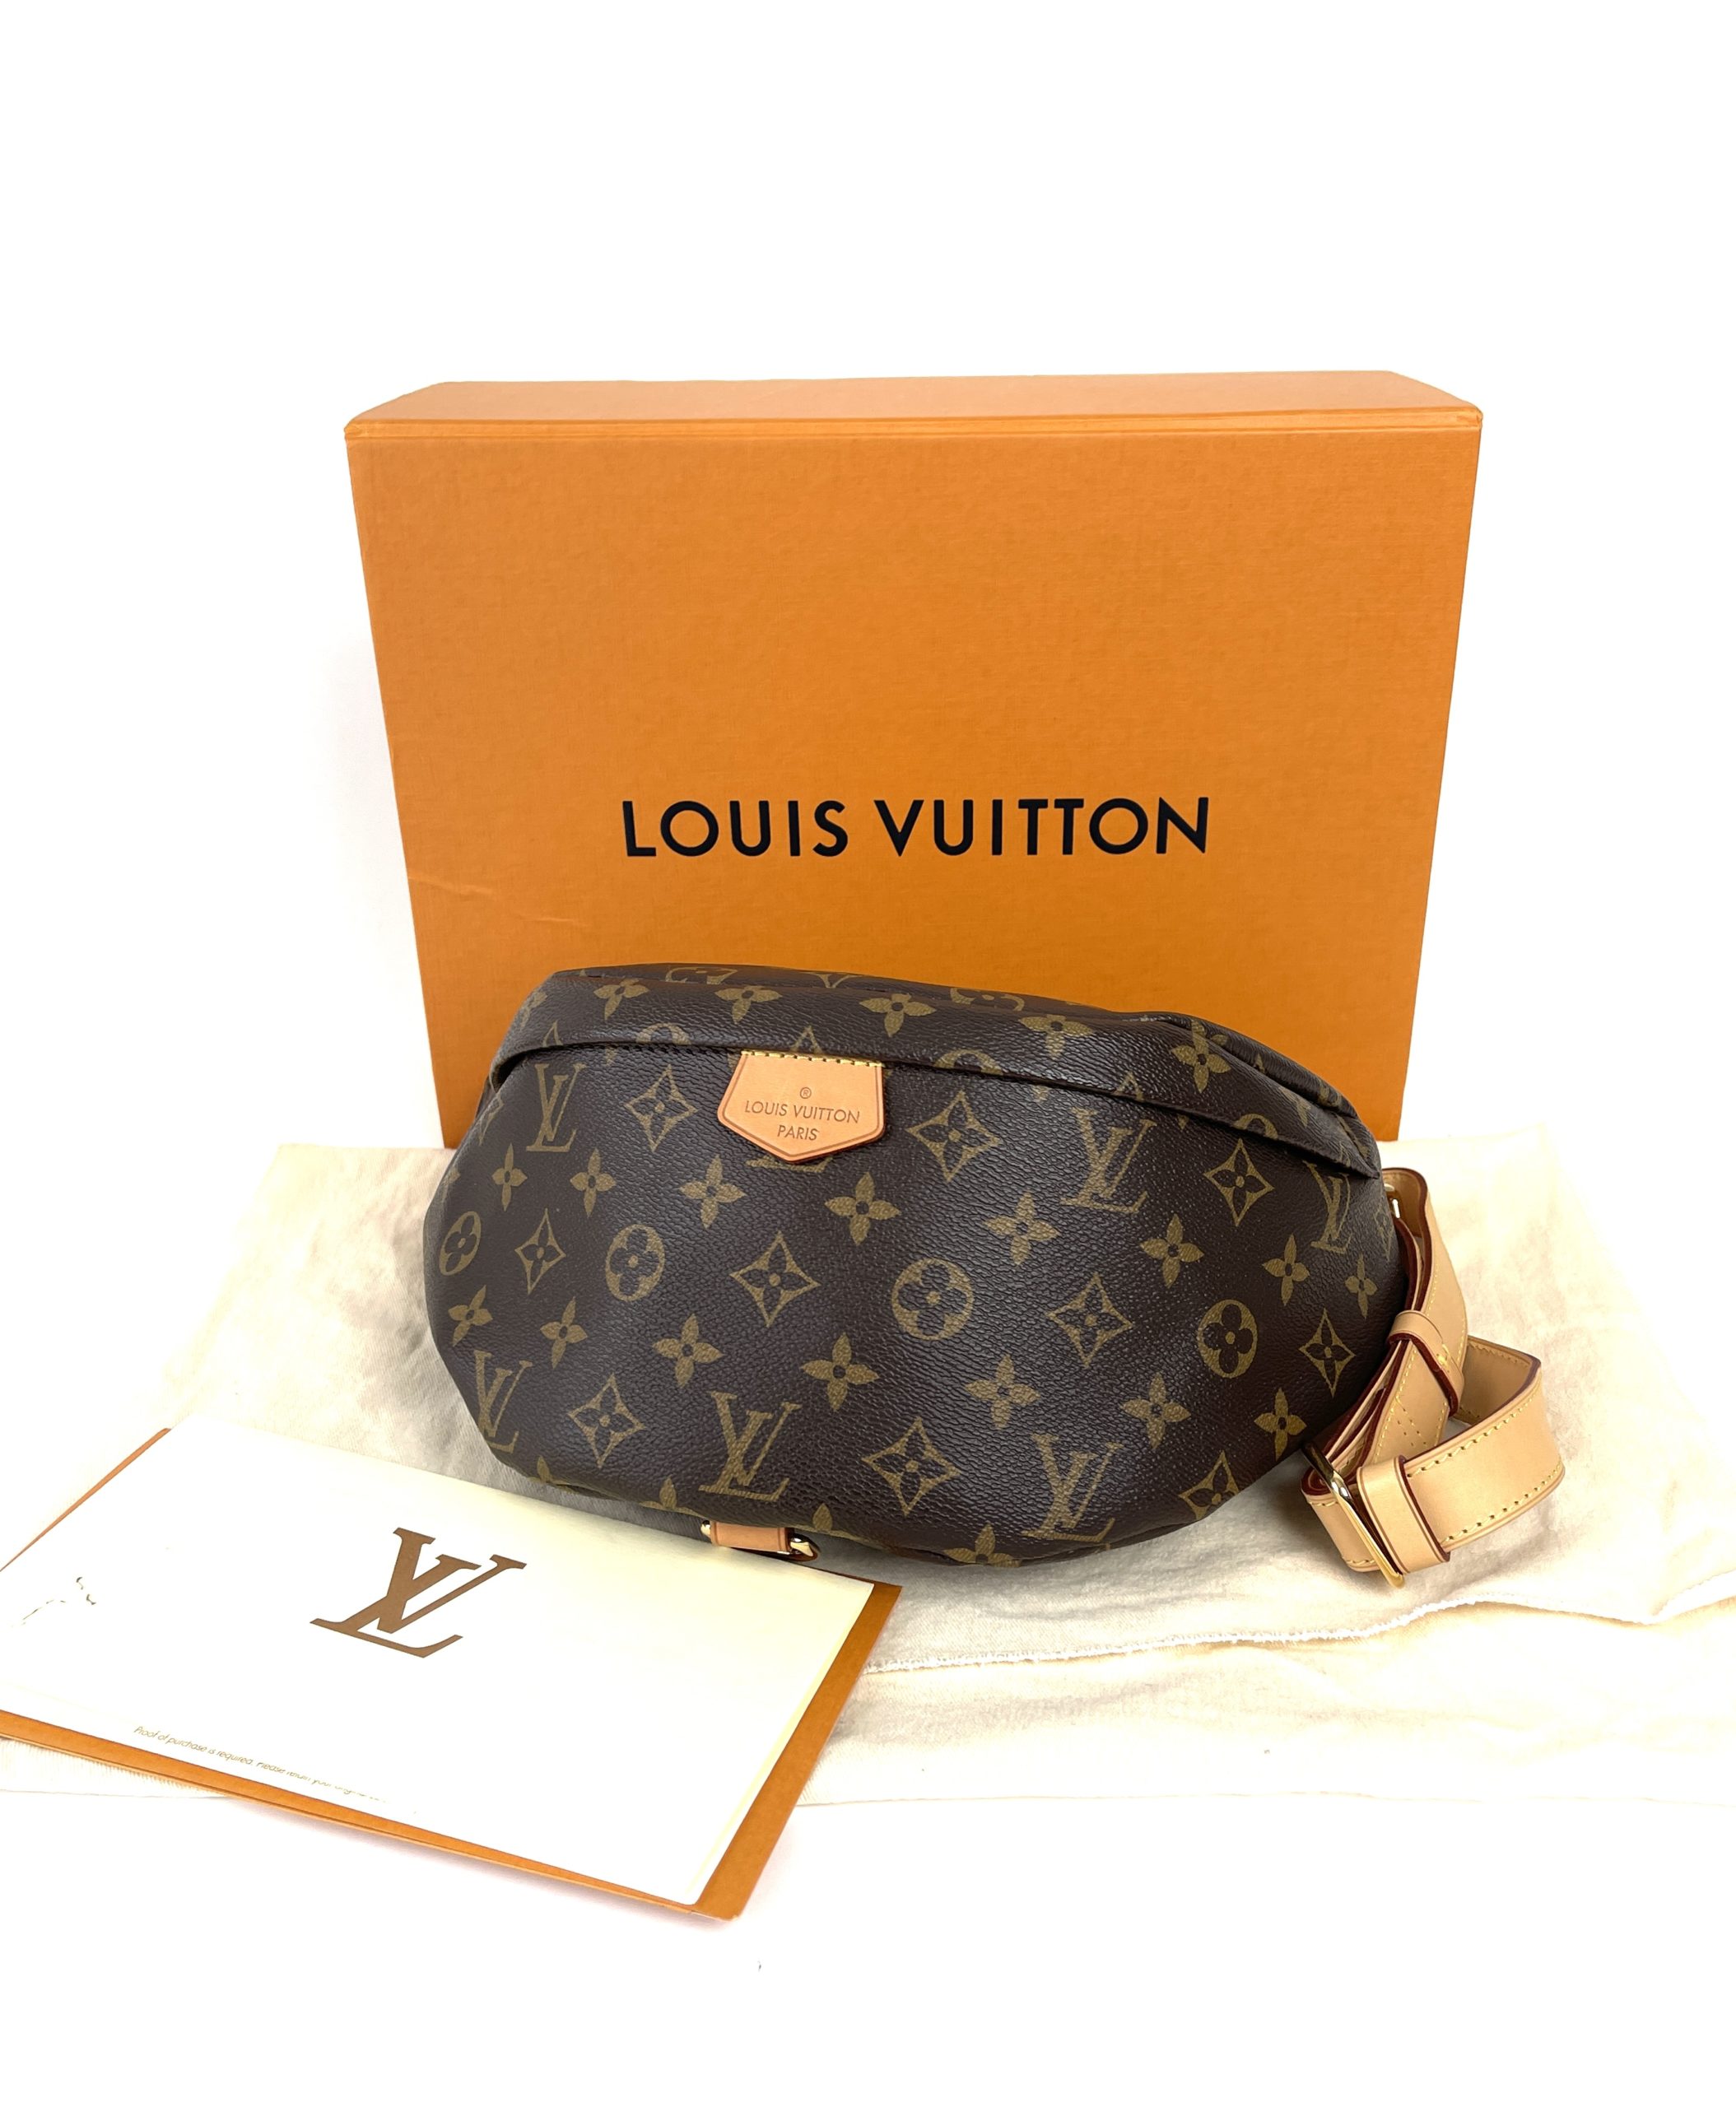 Unboxing Louis Vuitton's Bumbag world tour version. 